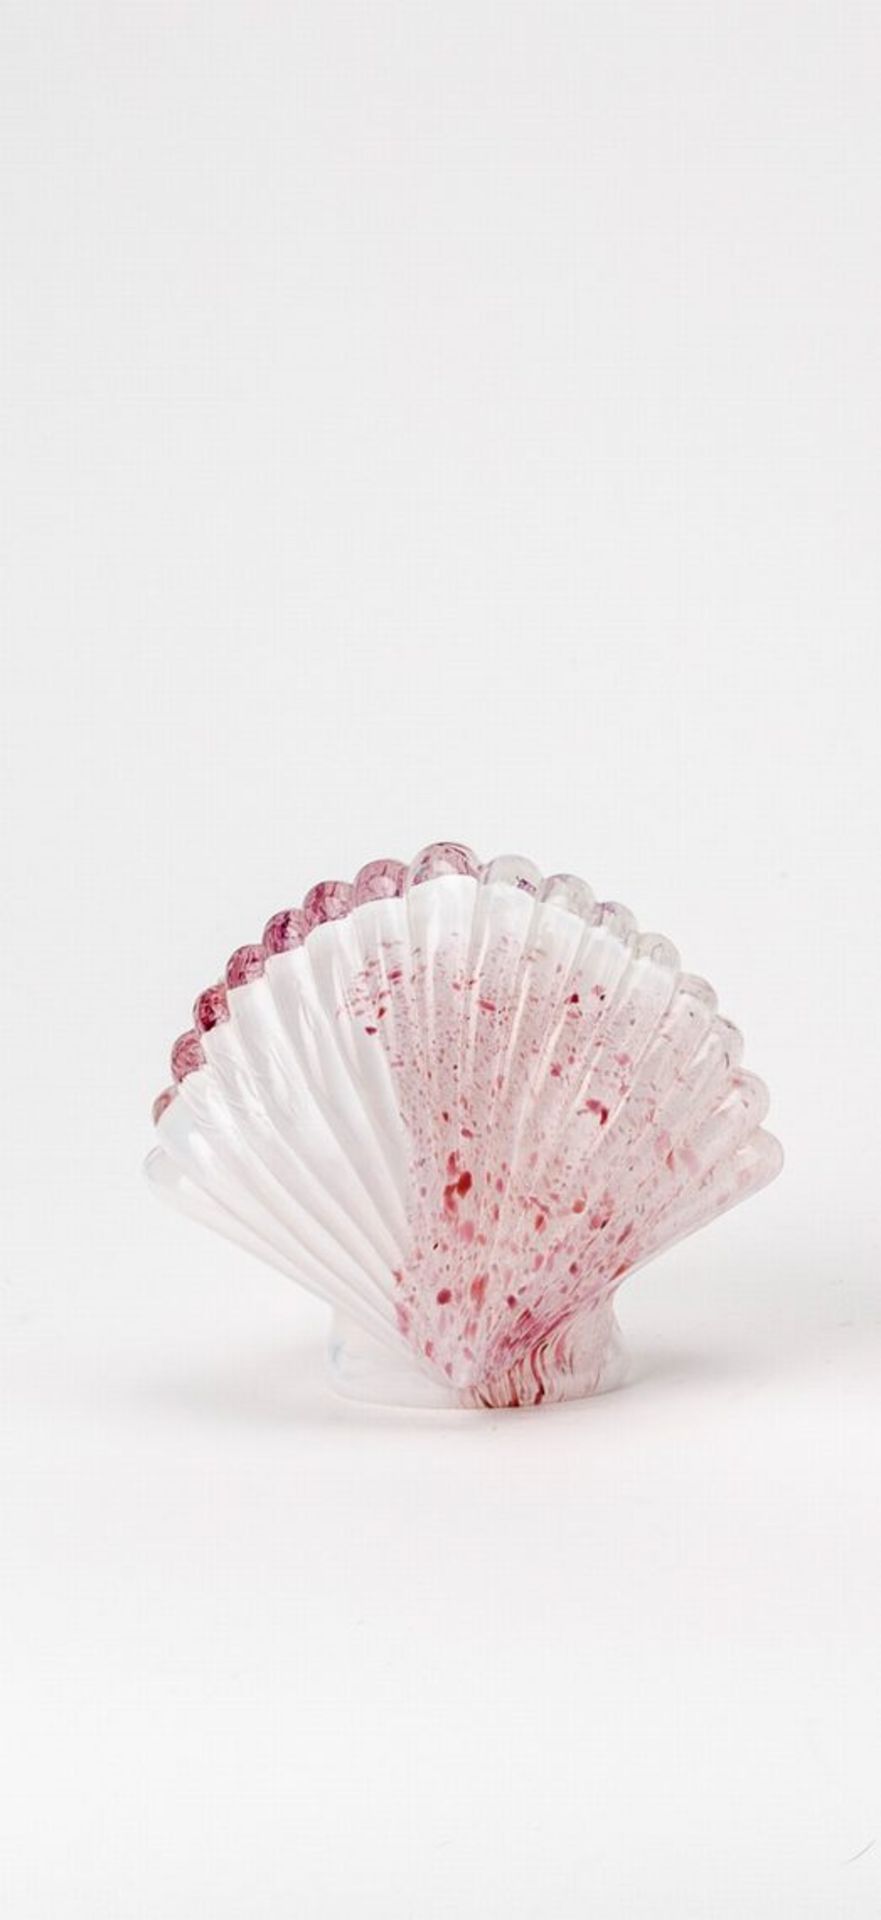 GlasobjektIn Form einer Muschel. Transparentes Glas, innen weiß überfangen, außen rosa